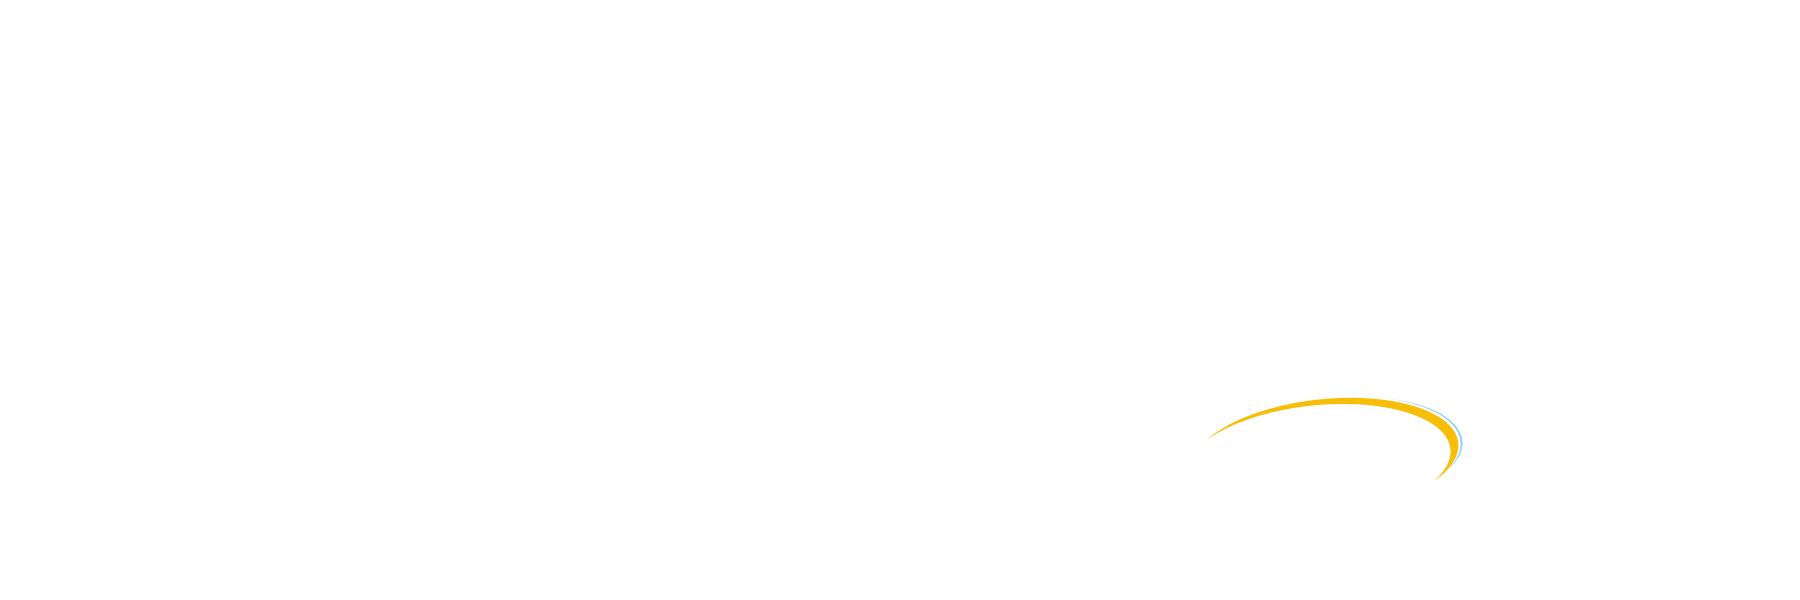 Pyramid Company Logo - Home - Pyramid Construction Services, Inc.